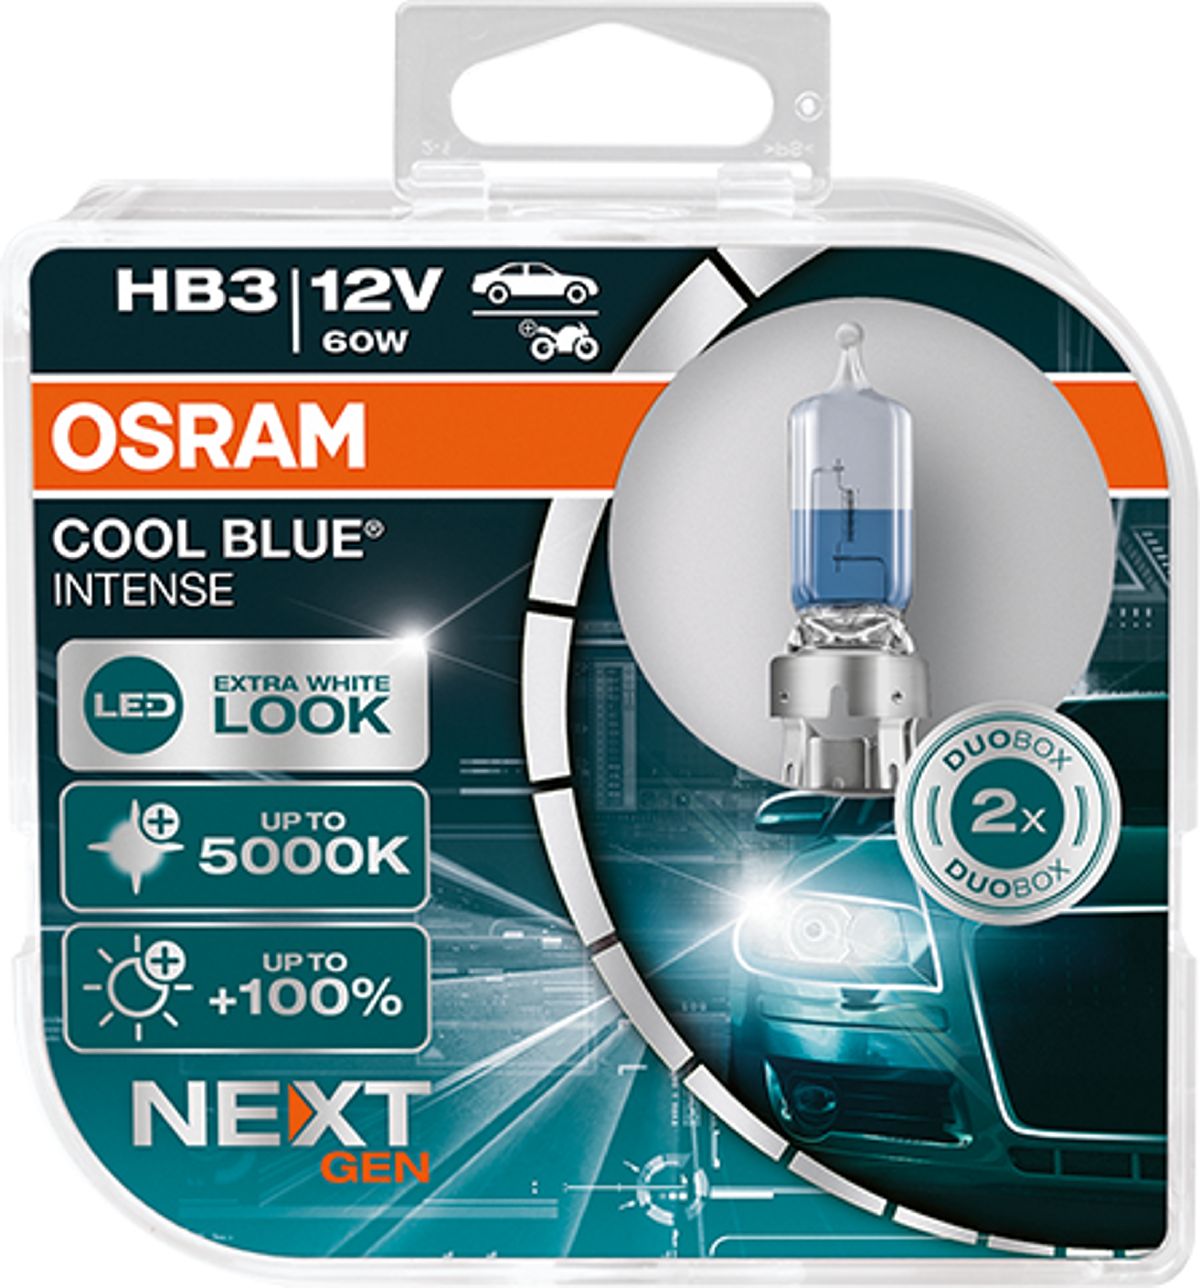 OSRAM Cool blue intense HB3 Duobox